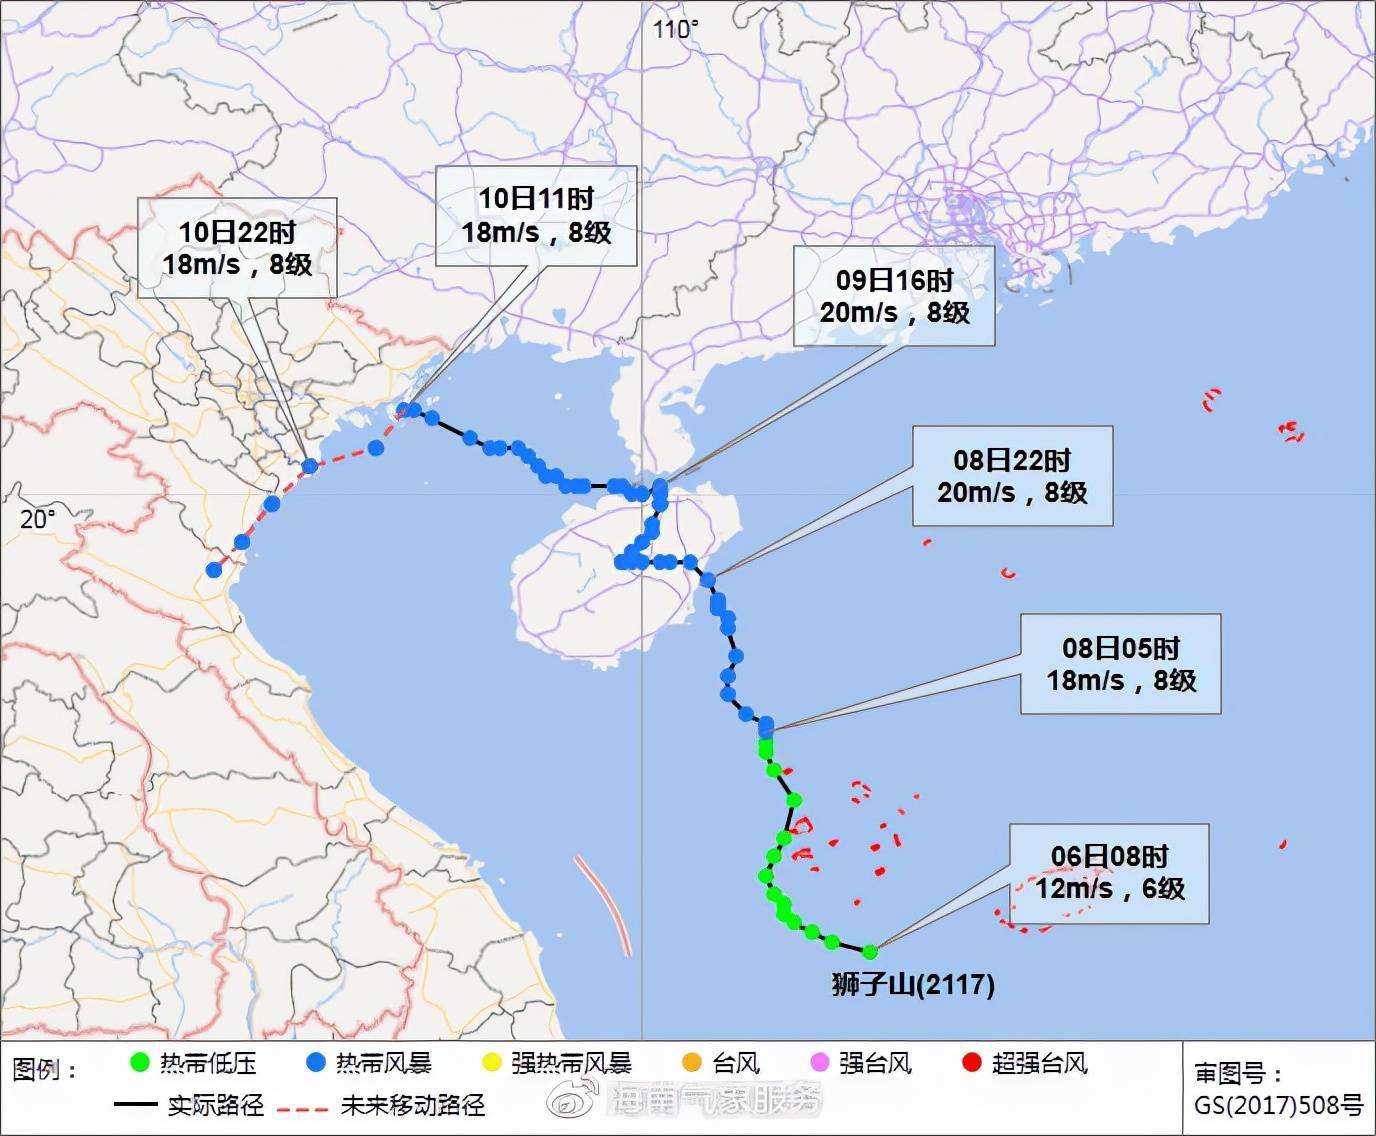 台风 狮子山 对海南省影响结束 台风 圆规 将给海南省带来强风雨